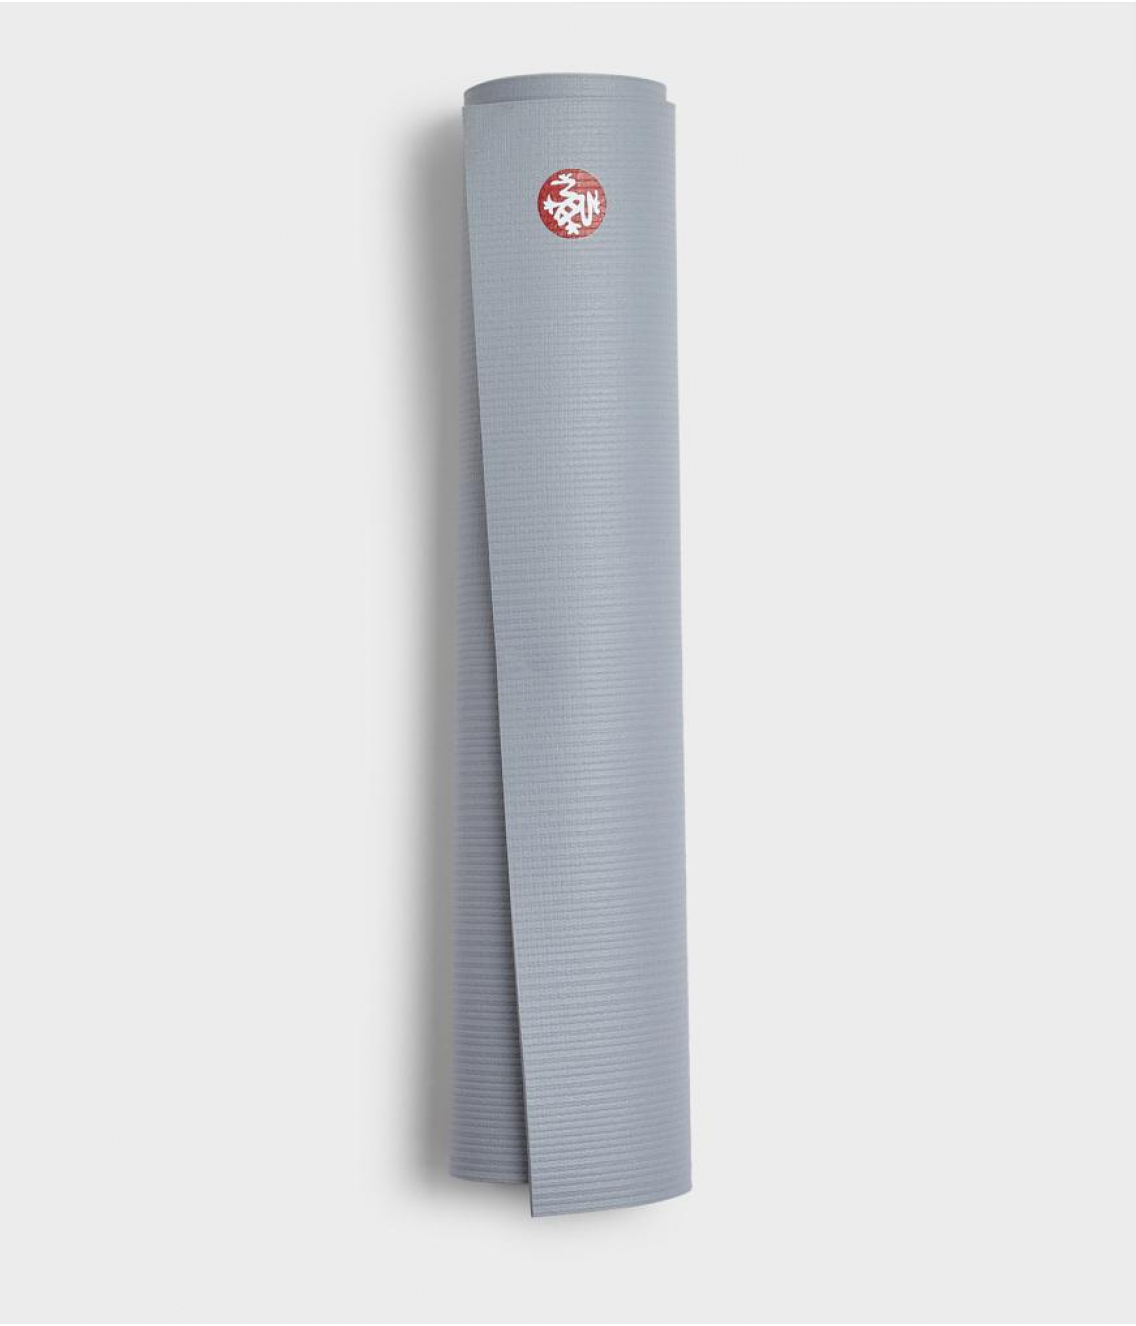 Профессиональный коврик для йоги из ПВХ Manduka PROlite 180*61*0,47 см - Shadow (Limited Edition)